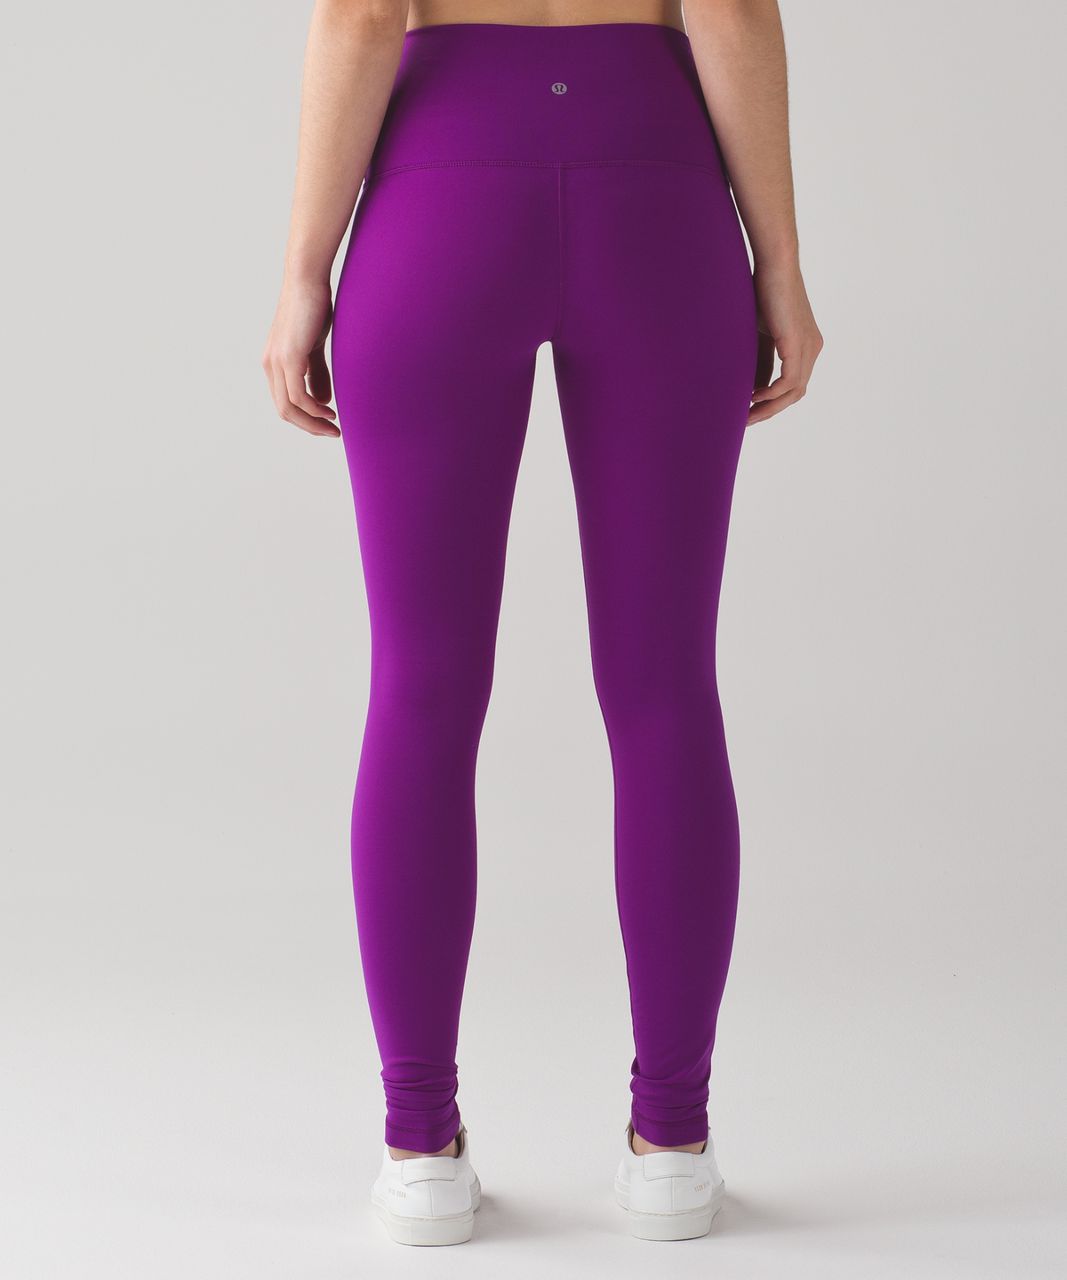 lululemon purple pants